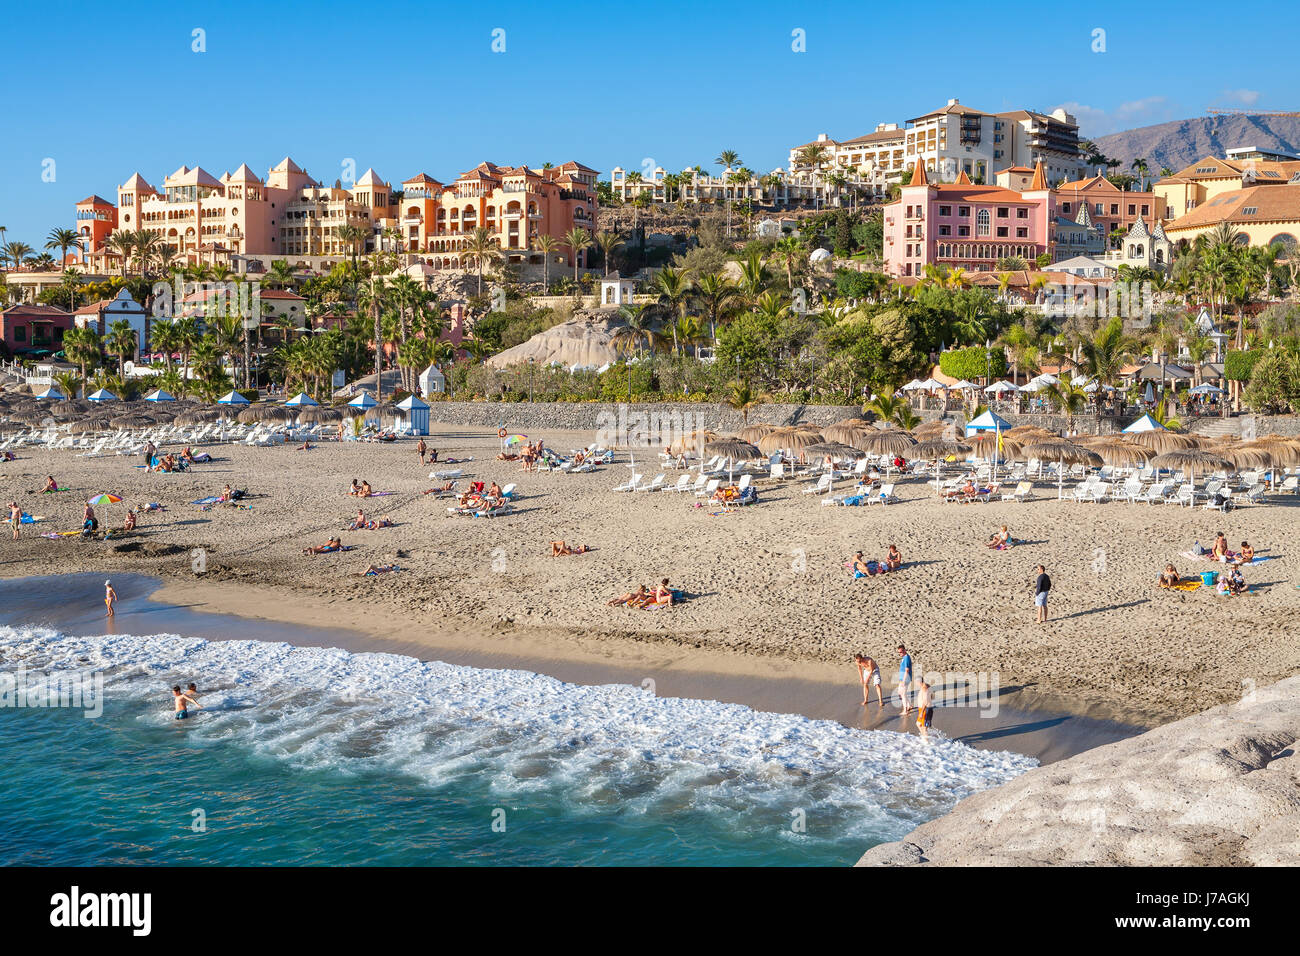 Beaucoup de gens en train de bronzer sur la plage Playa del Duque. Costa Adeje, Tenerife, Canaries, Espagne Banque D'Images